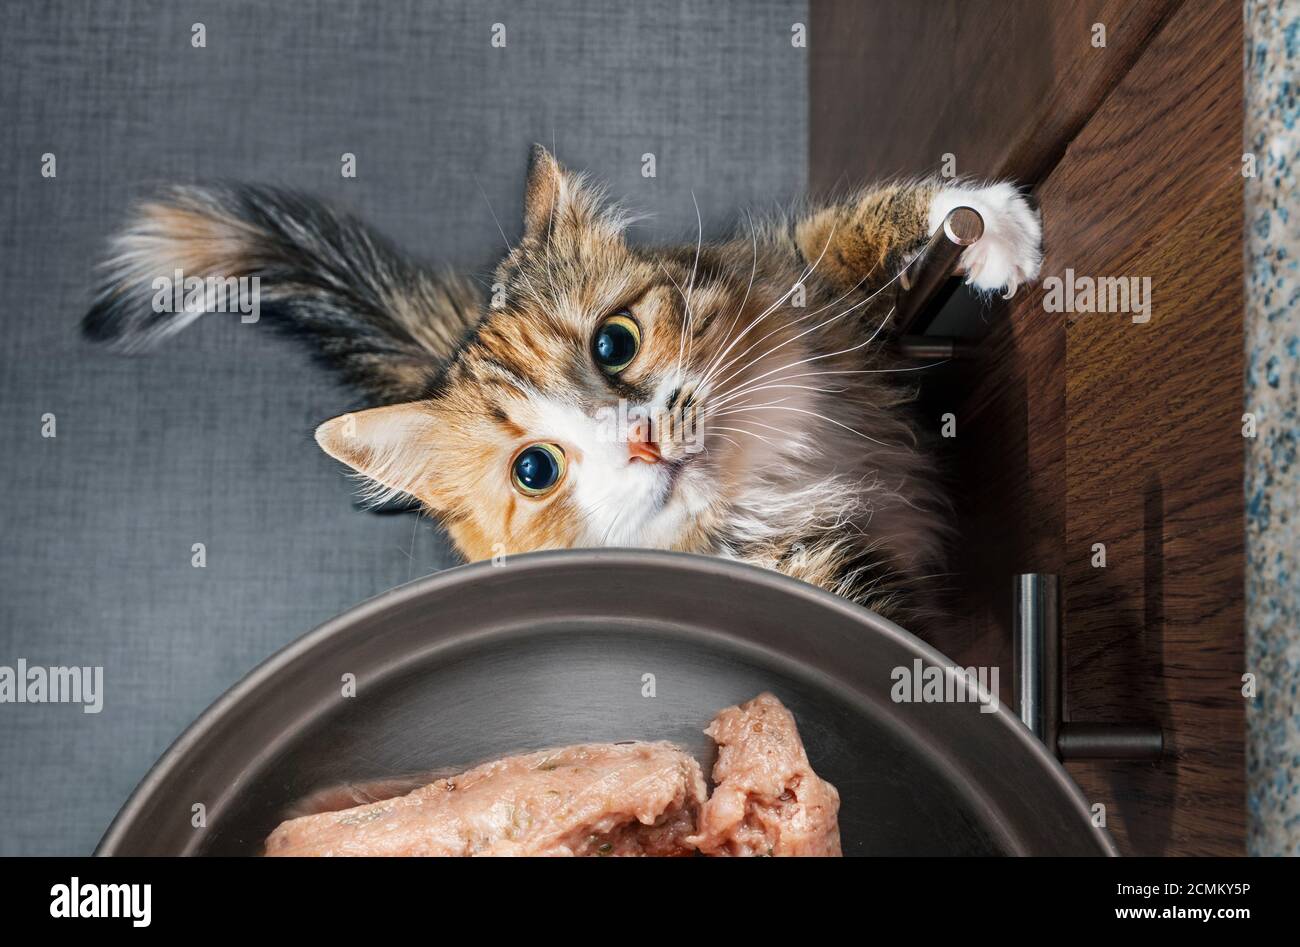 Draufsicht auf verzweifelte Katze, die versucht, in eine Schüssel mit gemahlenem Hühnerfleisch zu gelangen. Katze steht auf den Hinterbeinen. Konzept für Rohkost Ernährung. Stockfoto